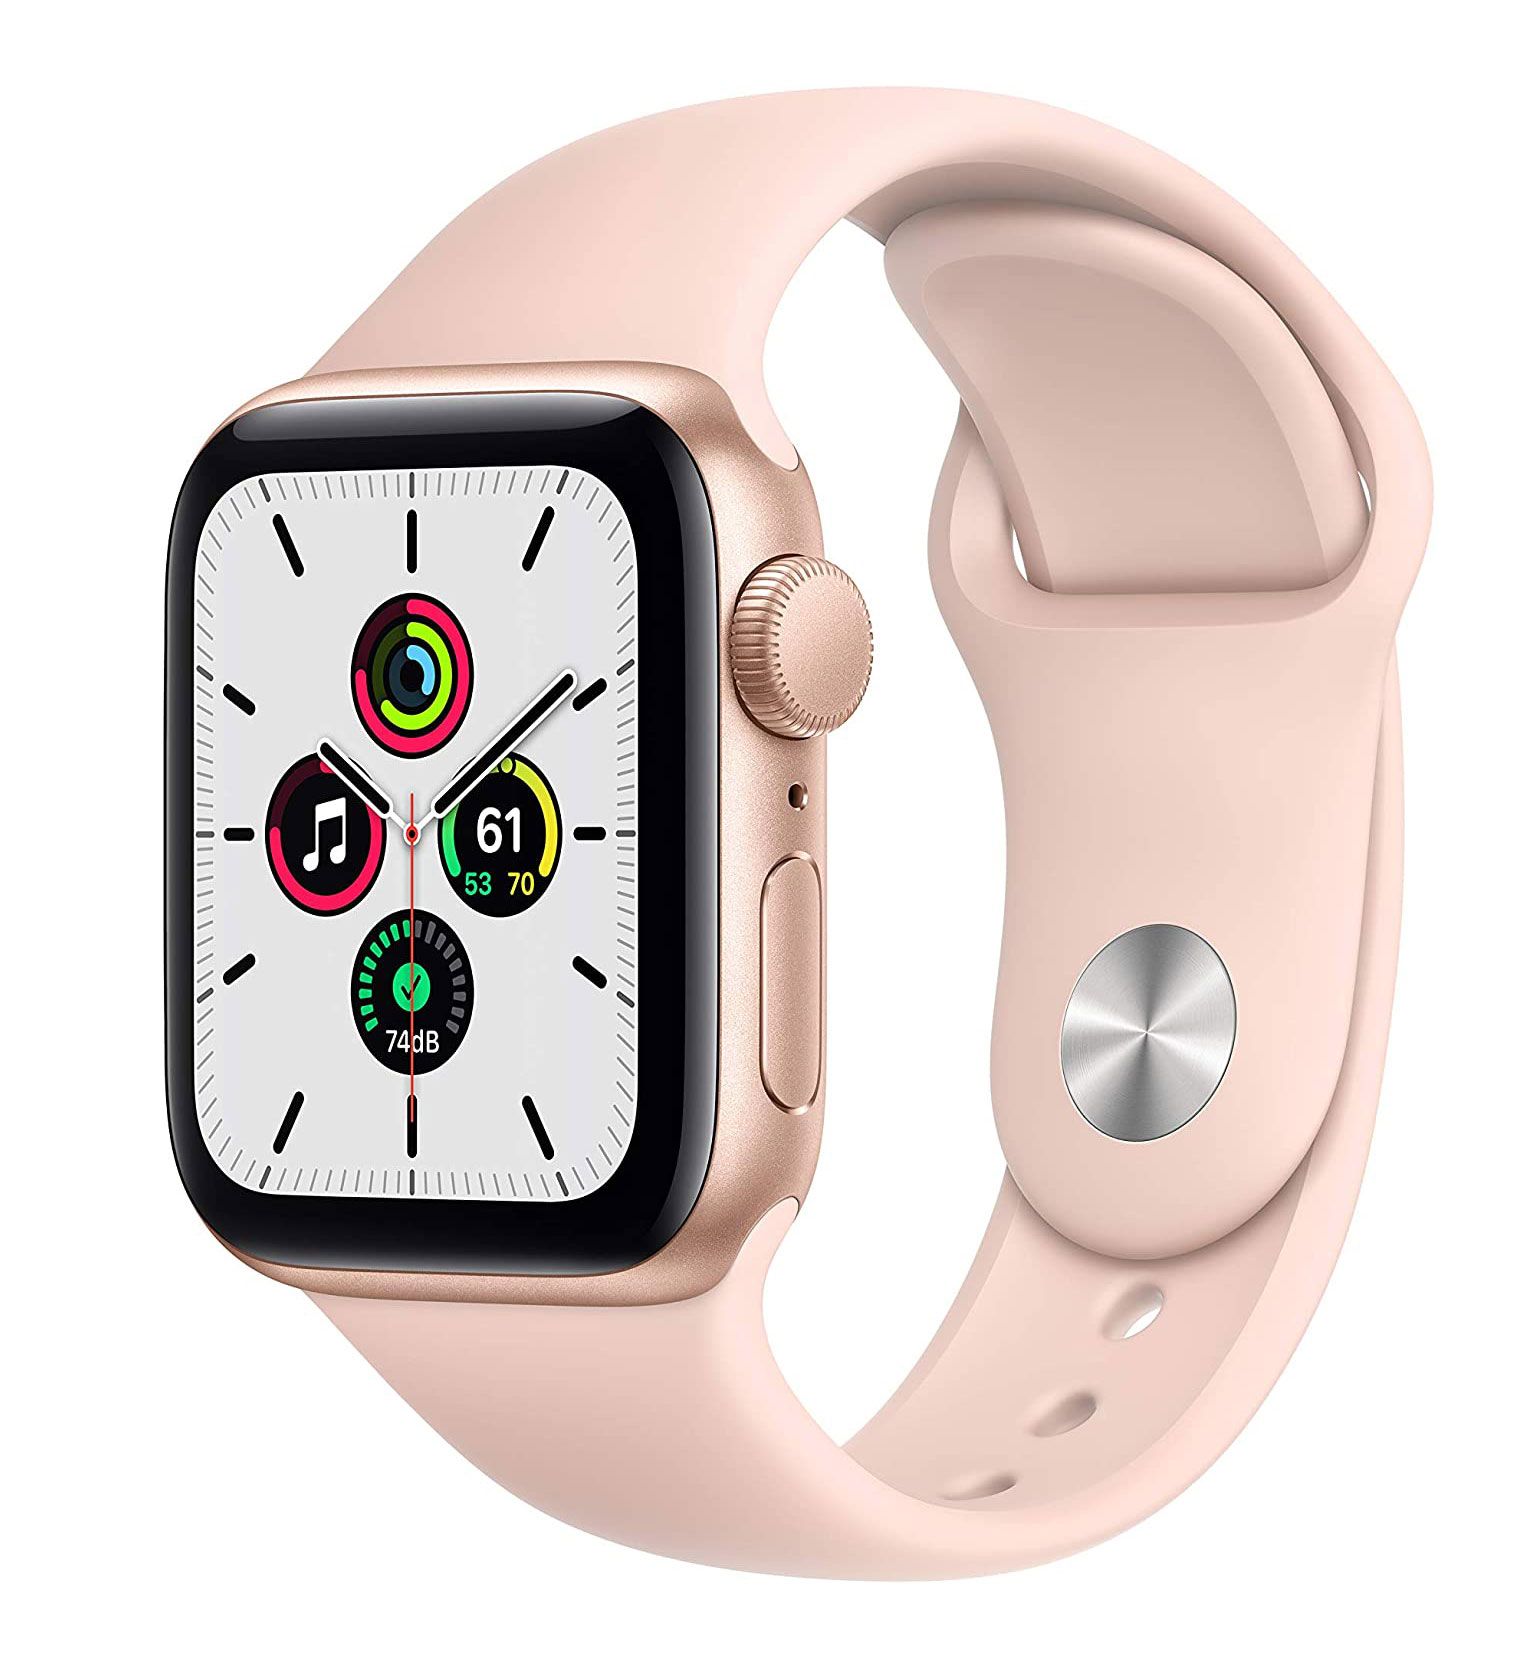 საუკეთესო საჩუქრები, საჩუქრების იდეები ქალებისთვის - Apple Watch SE